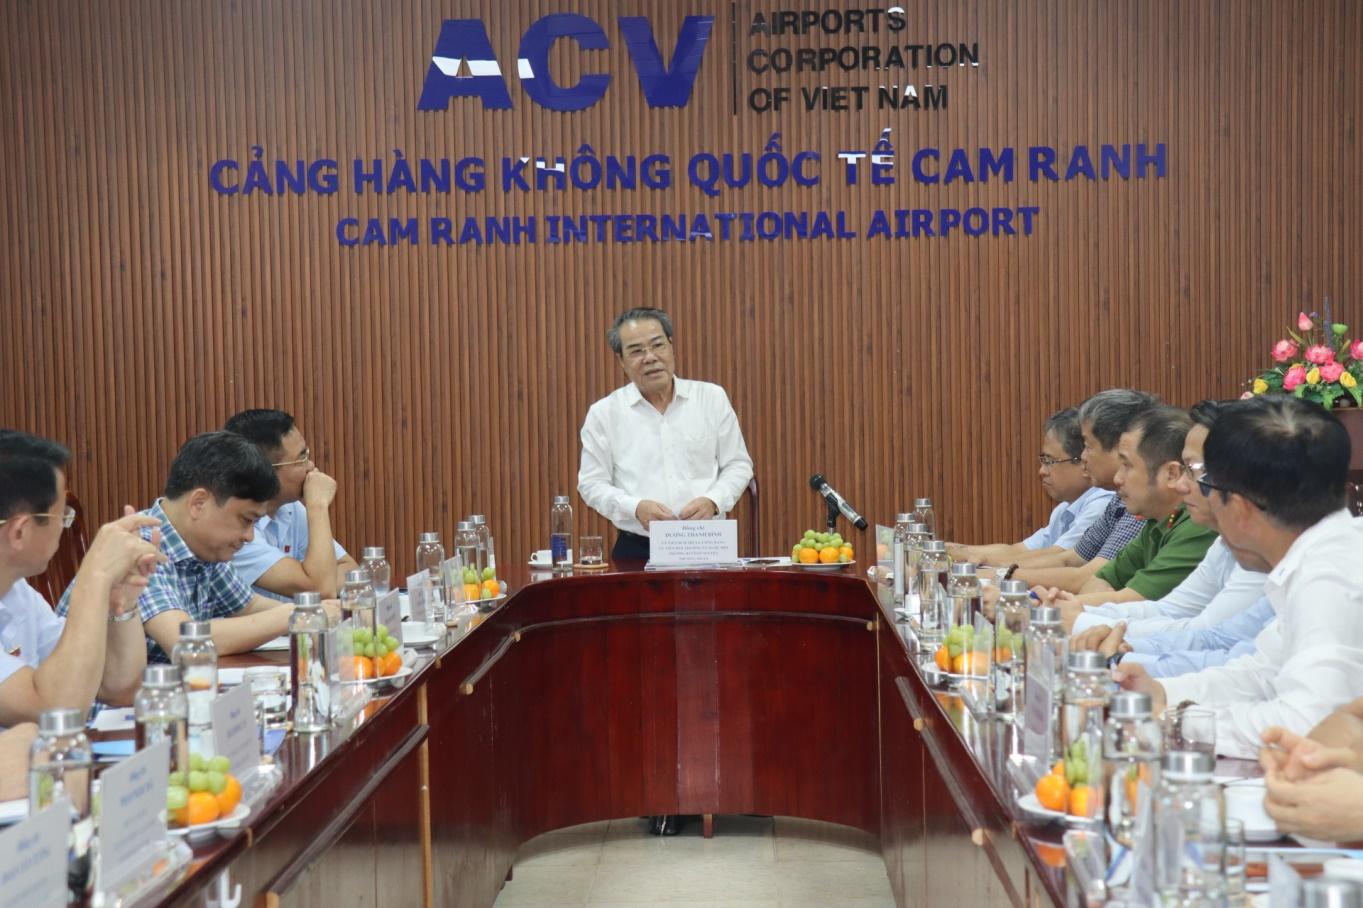 Đồng chí Dương Thanh Bình kết luận buổi làm việc